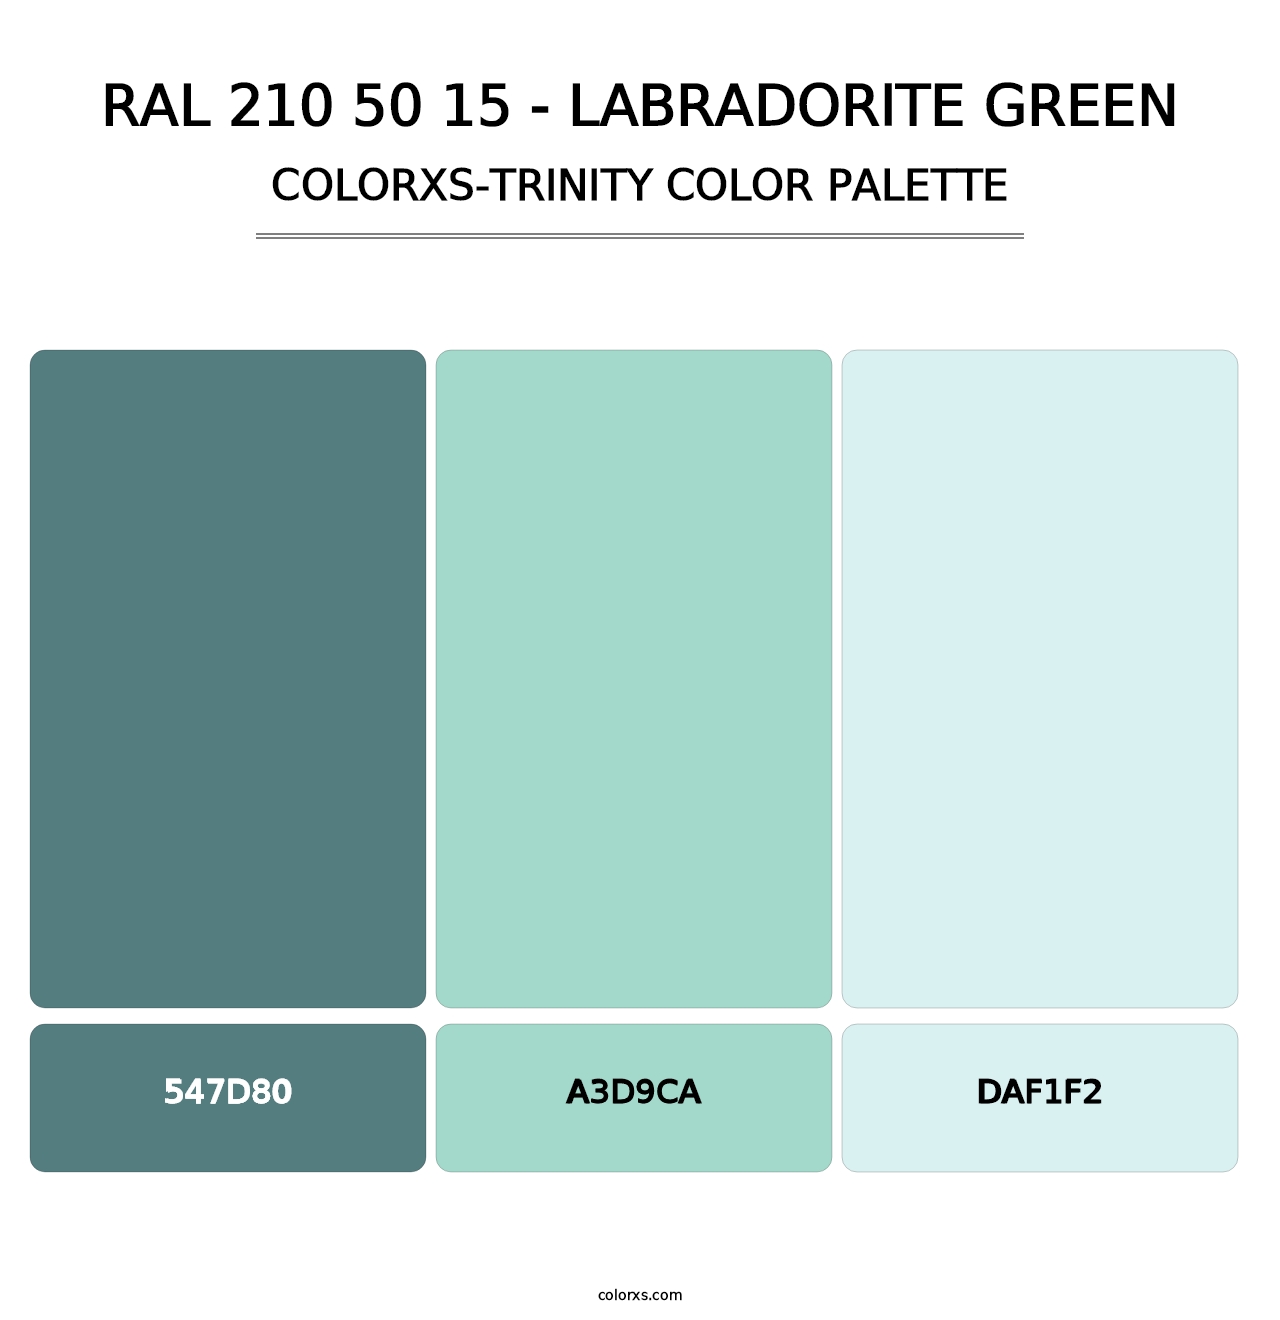 RAL 210 50 15 - Labradorite Green - Colorxs Trinity Palette